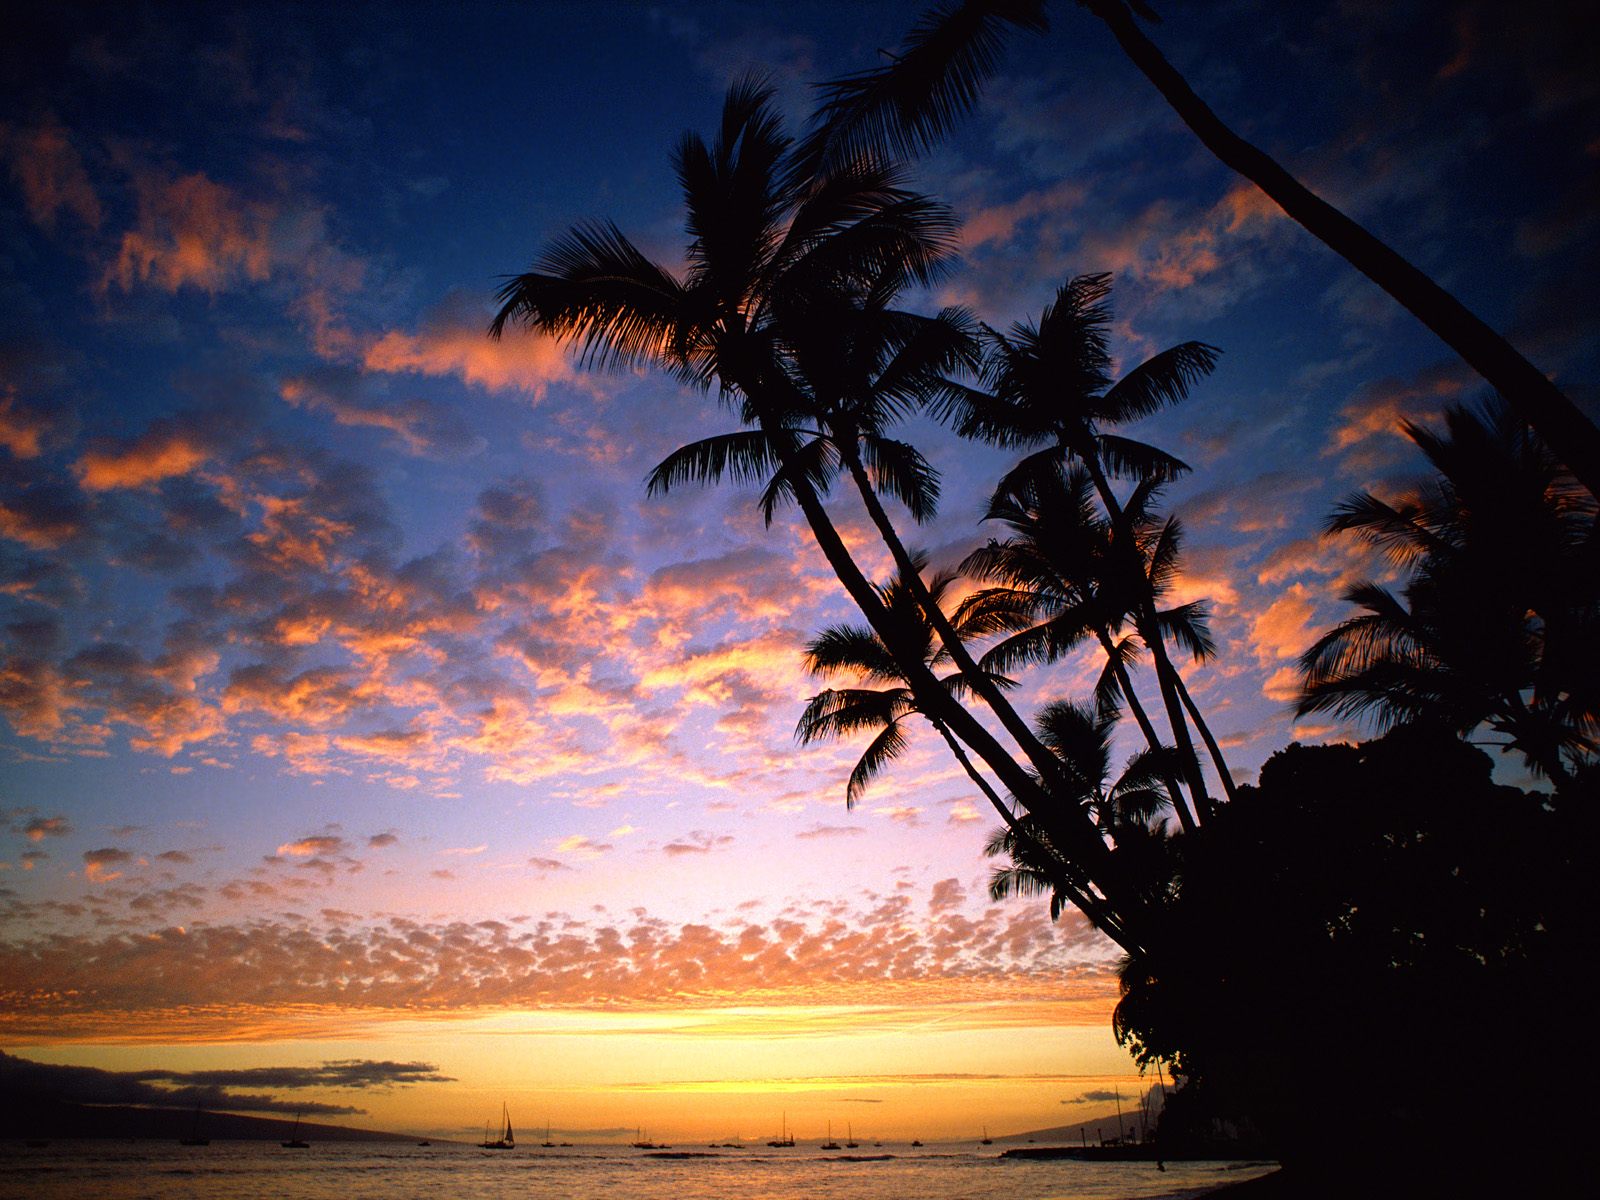 Hawaiian Desktop Wallpaper Image Amp Pictures Becuo